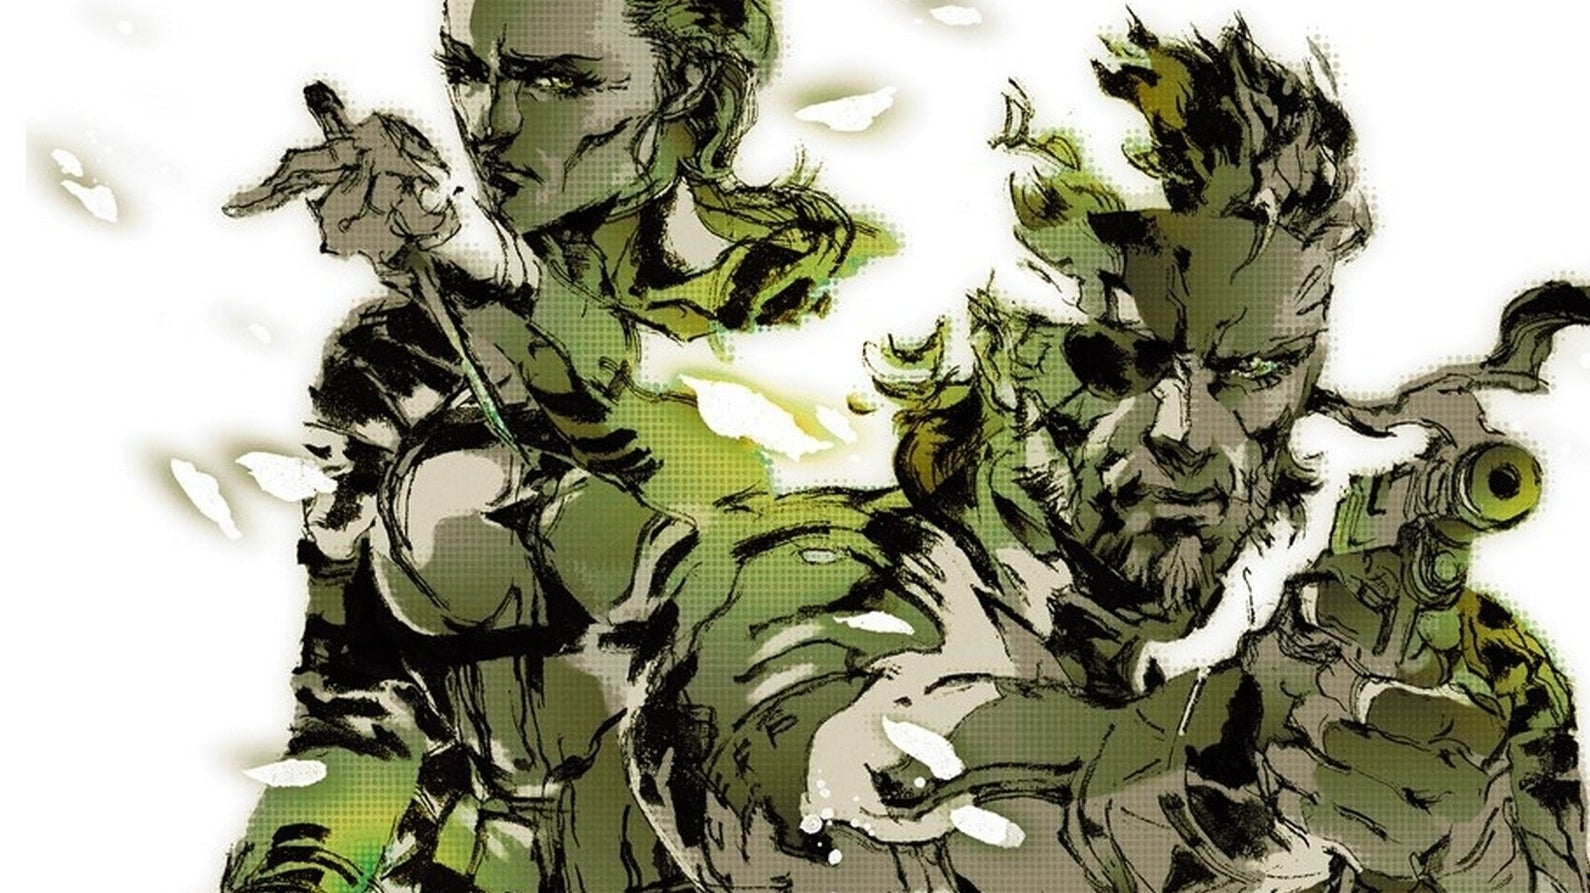 Bilder zu Metal Gear Solid 2 und 3 werden ab heute nicht mehr digital verkauft